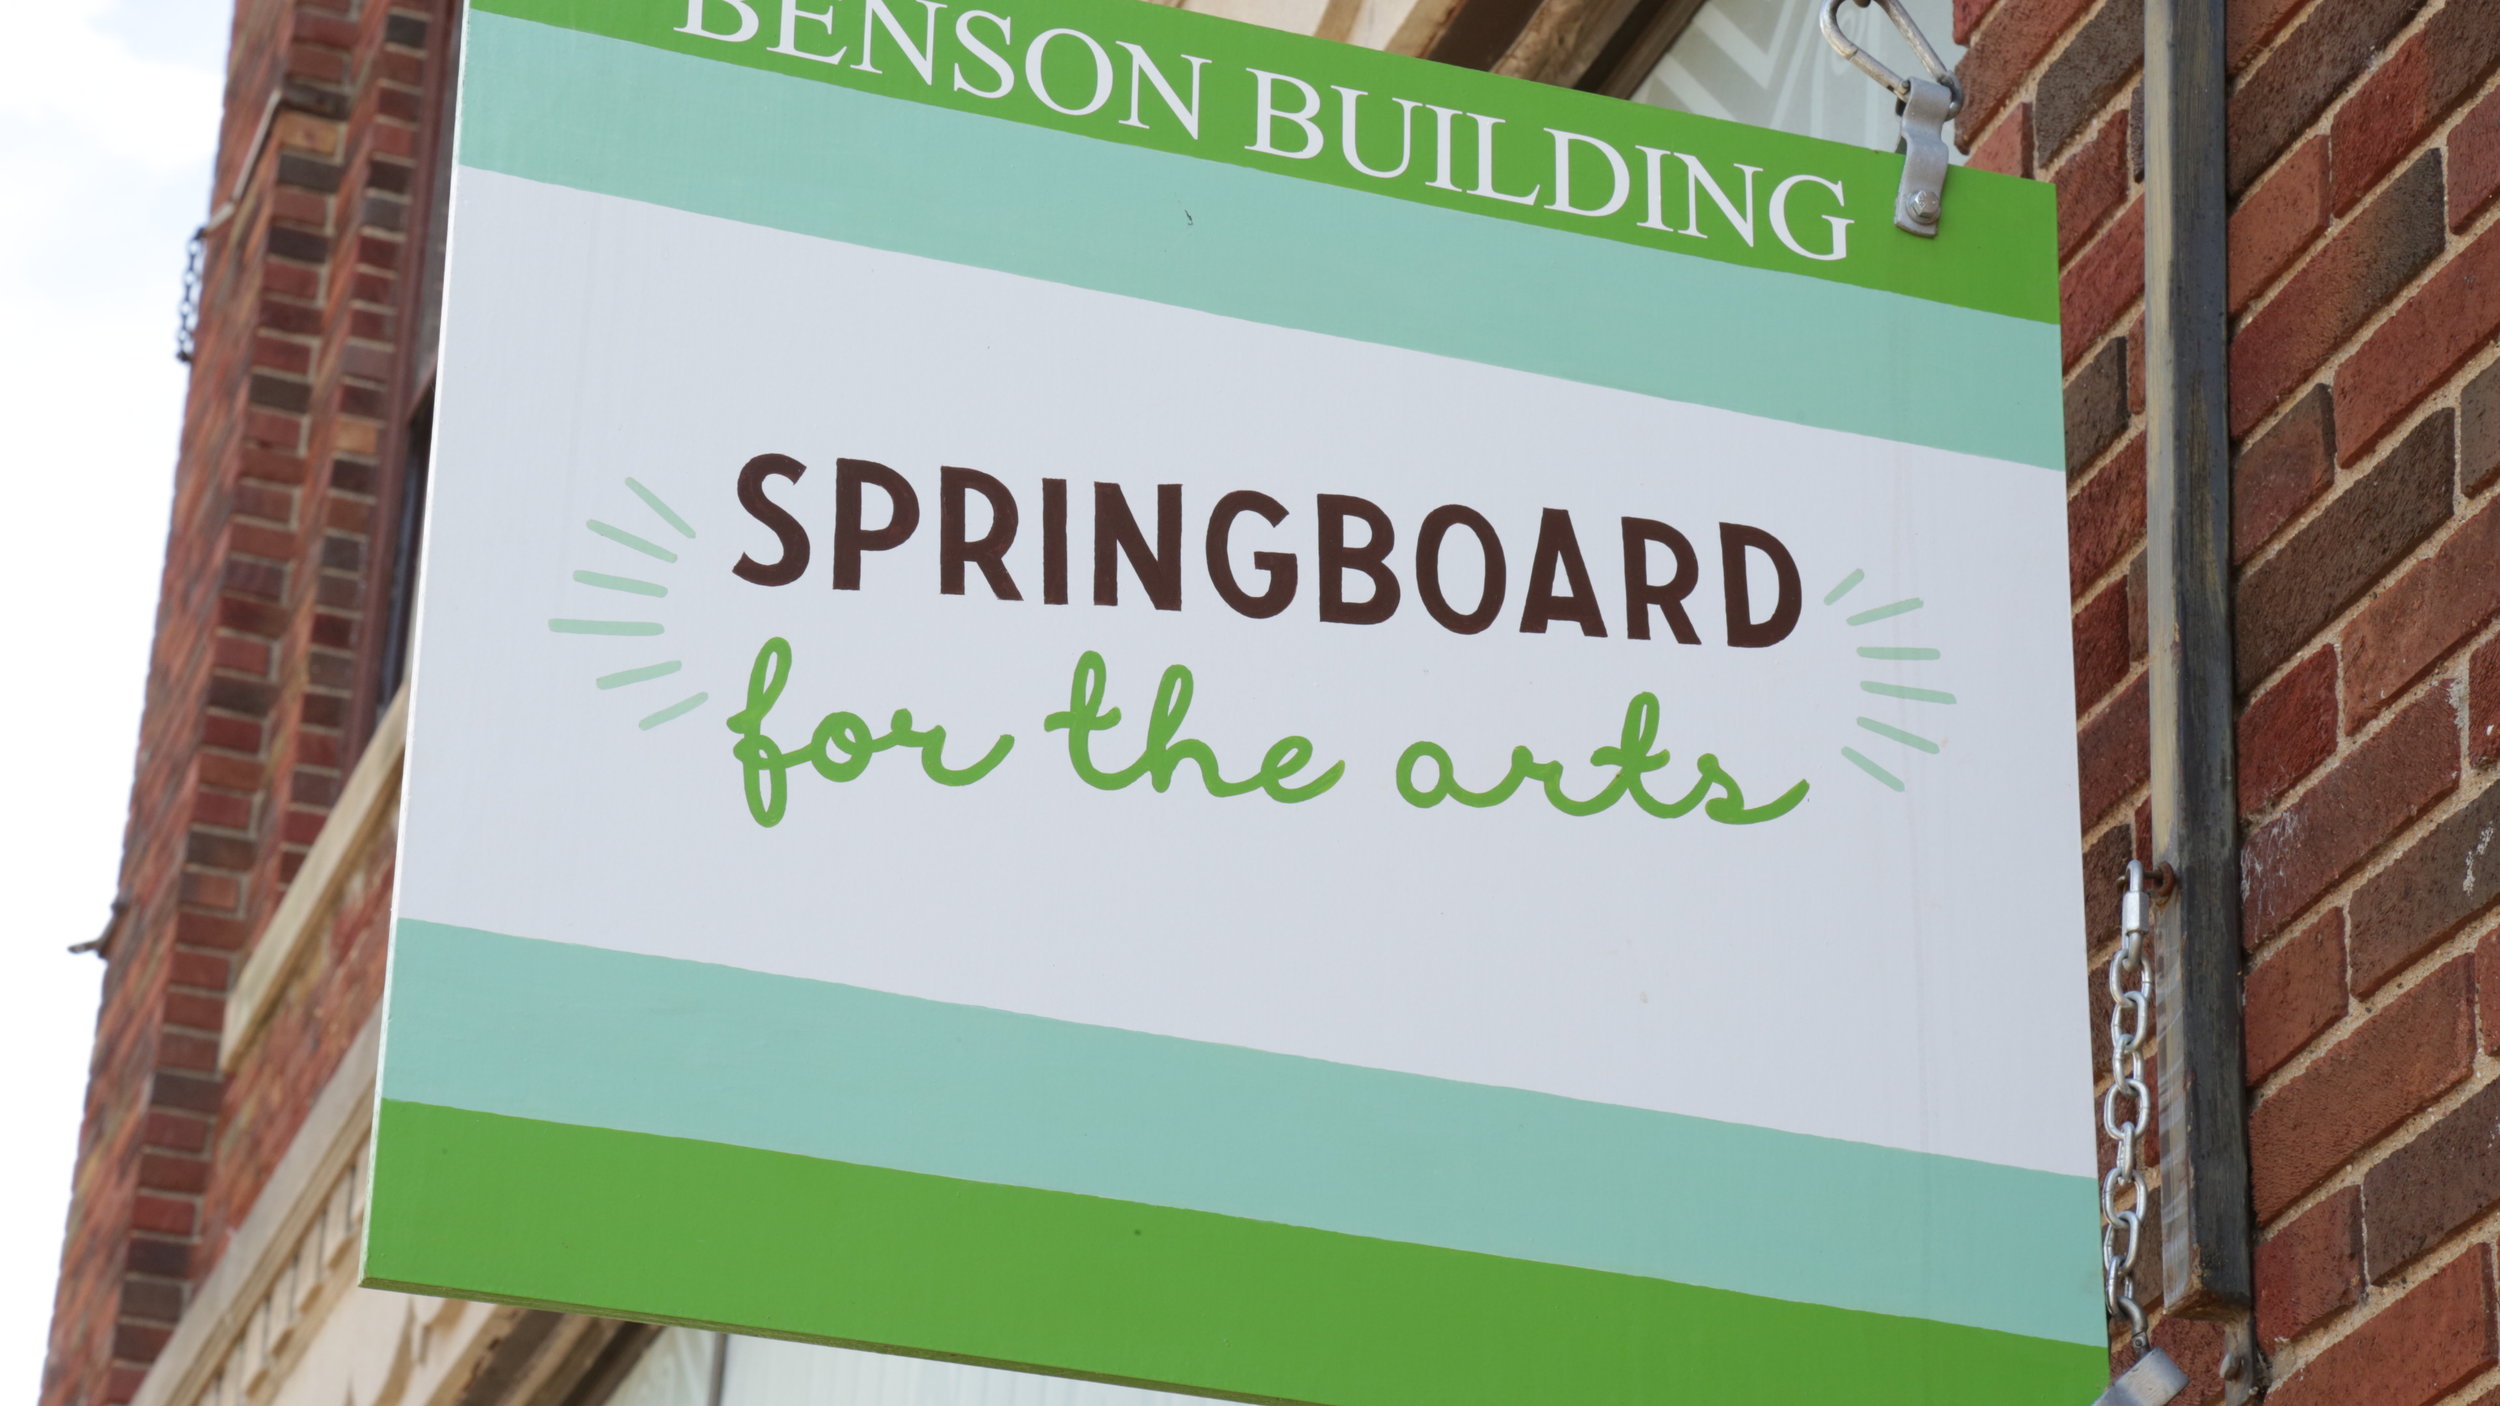 Springboard sidewalk signage